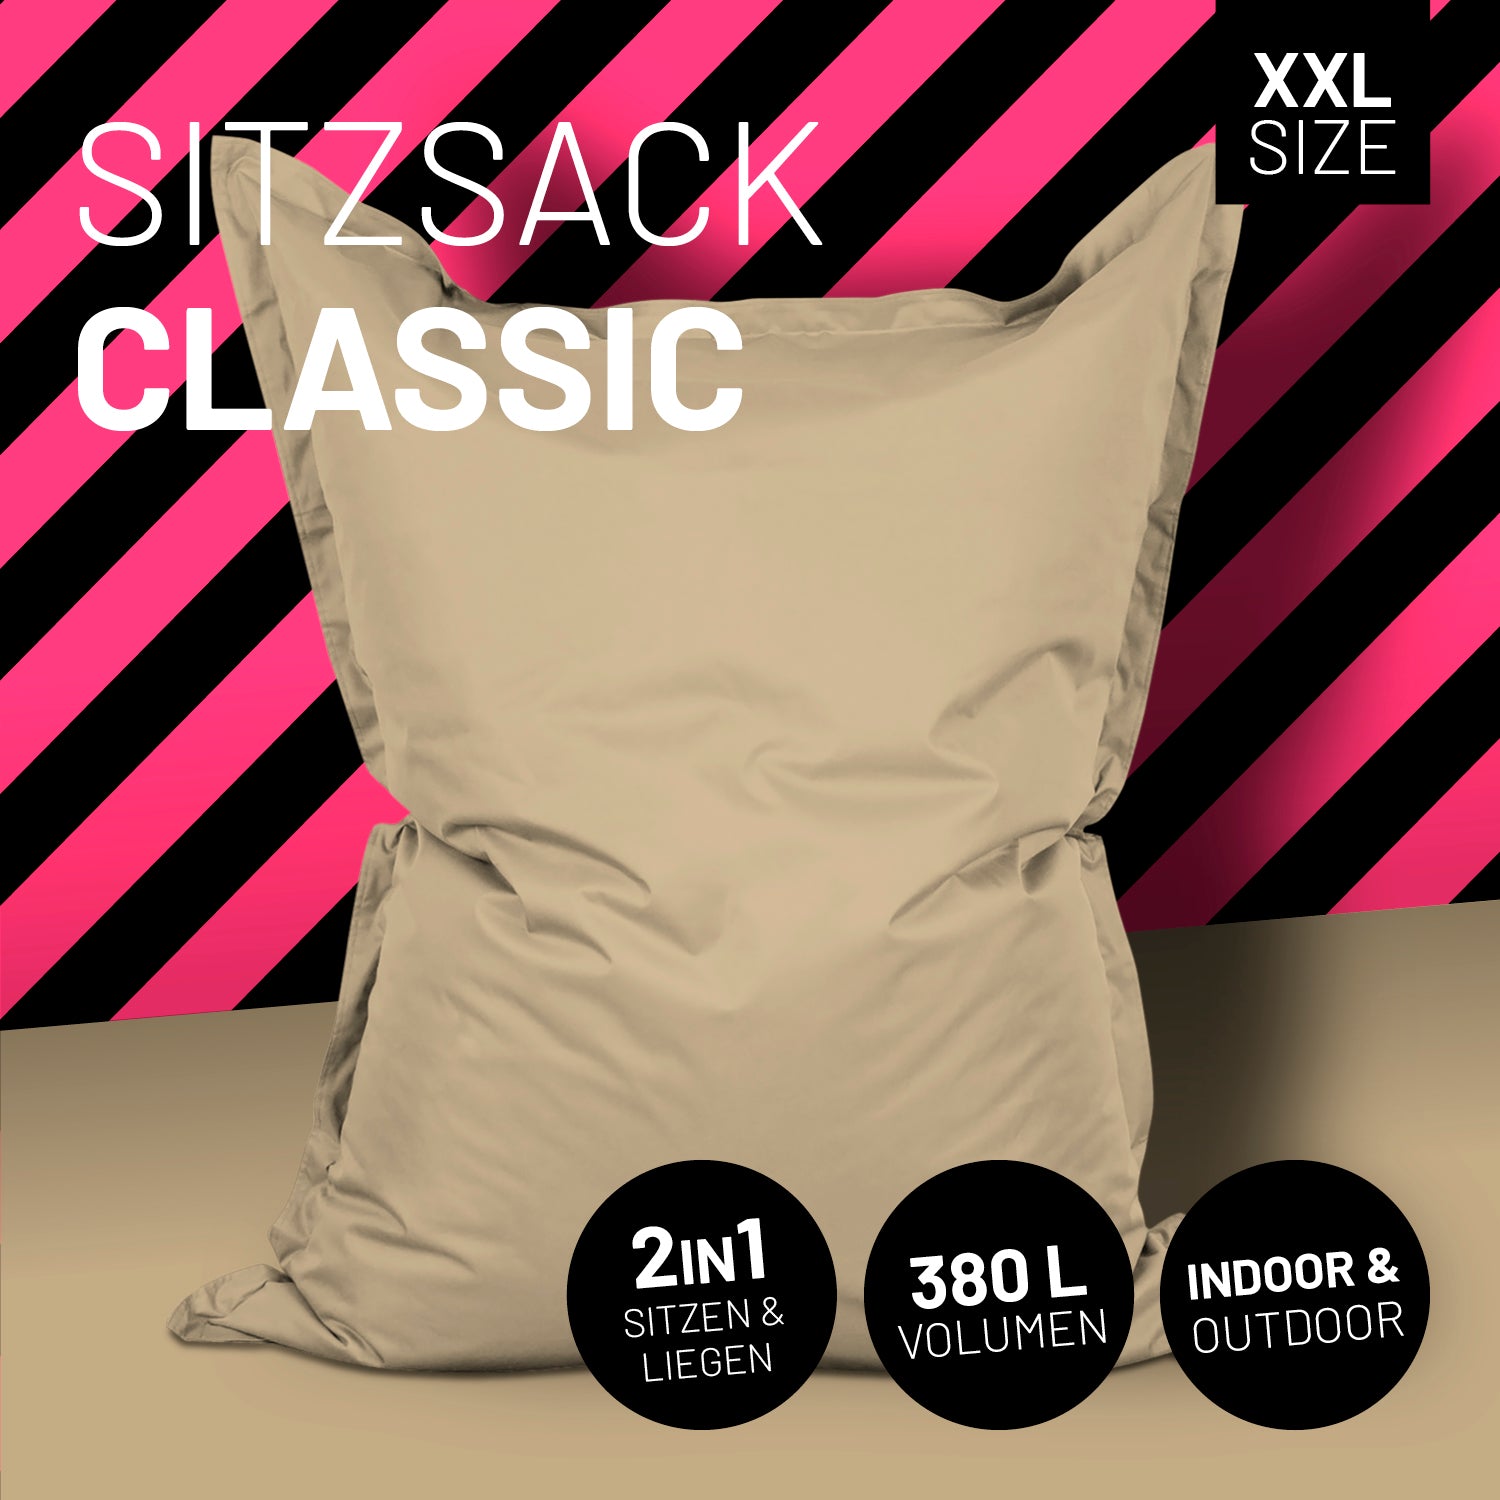 Sitzsack Classic XXL (380 L) - indoor & outdoor - Beige